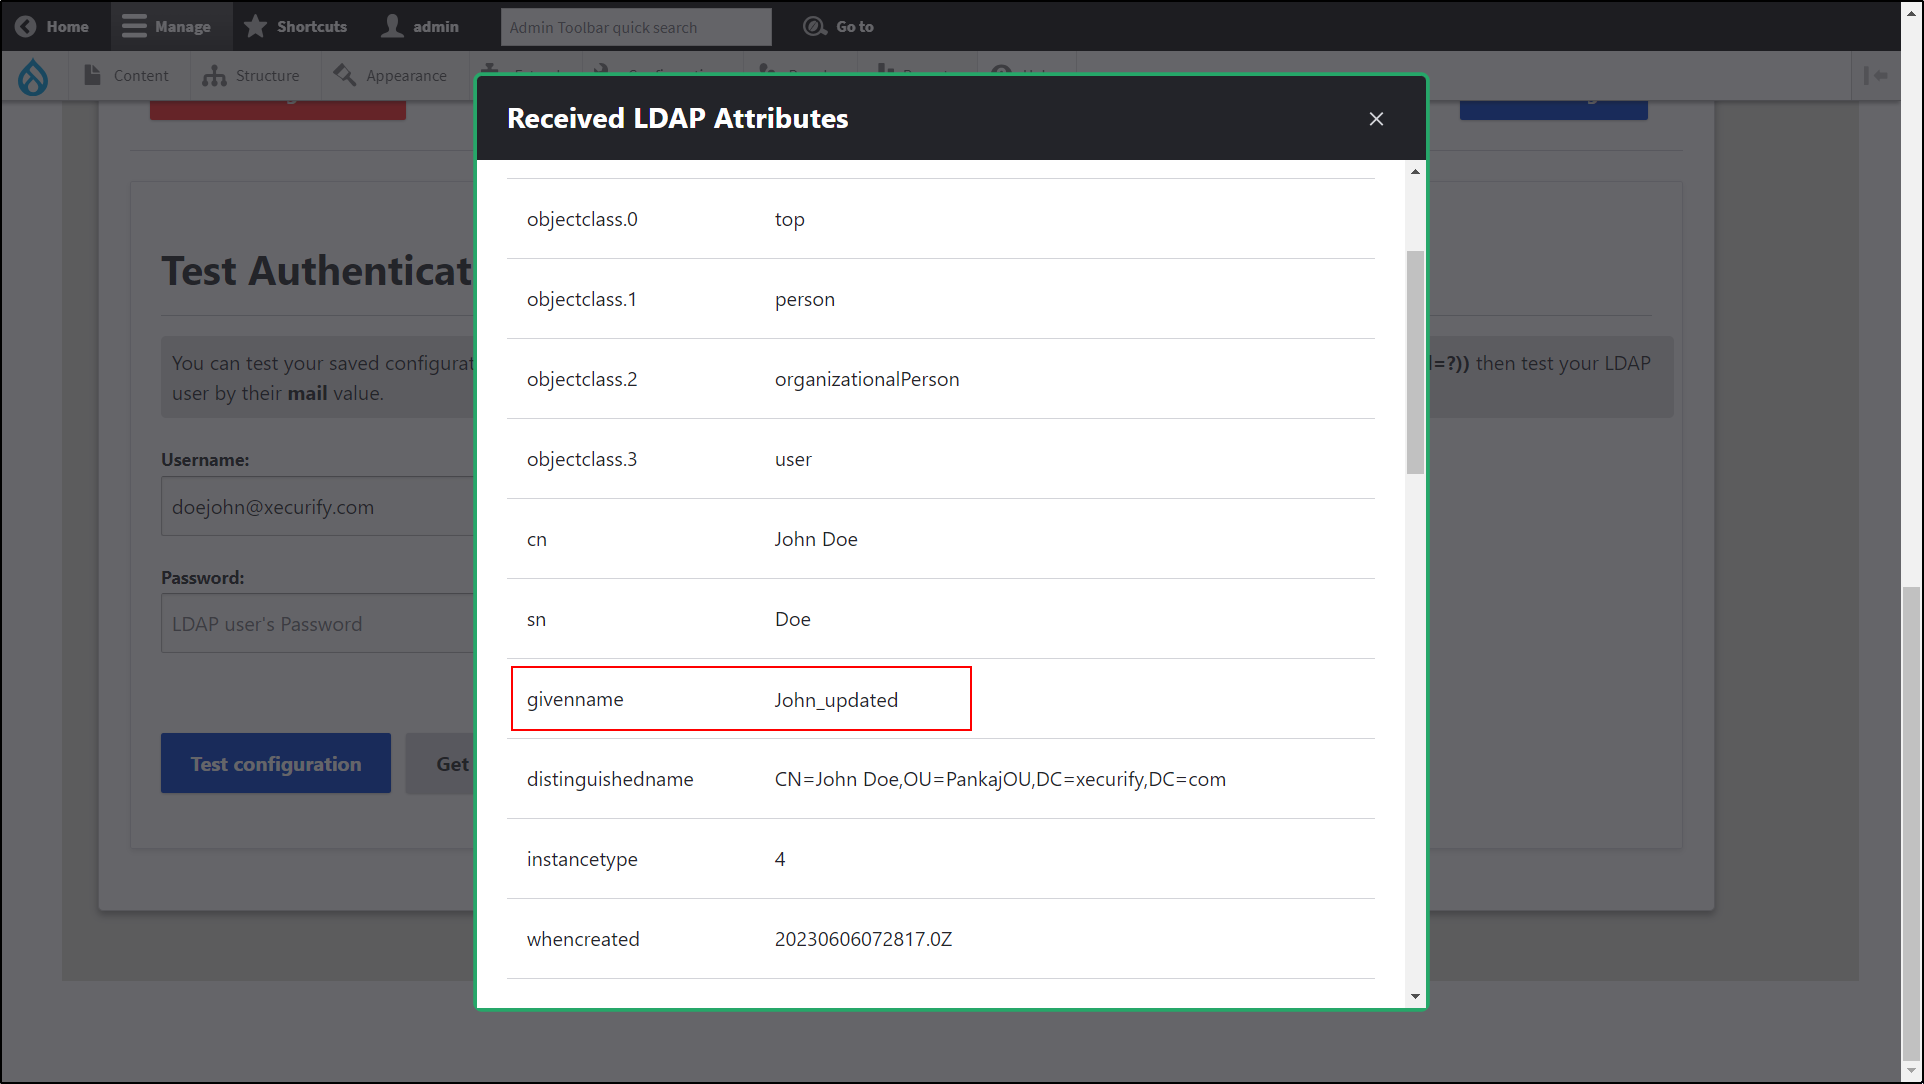 Intégration Drupal LDAP/Active Directory - Les informations utilisateur ci-dessous userprincipalname et gavemane ont été mises à jour dans les champs indiqués dans la fenêtre contextuelle de l'attribut LDAP reçu.